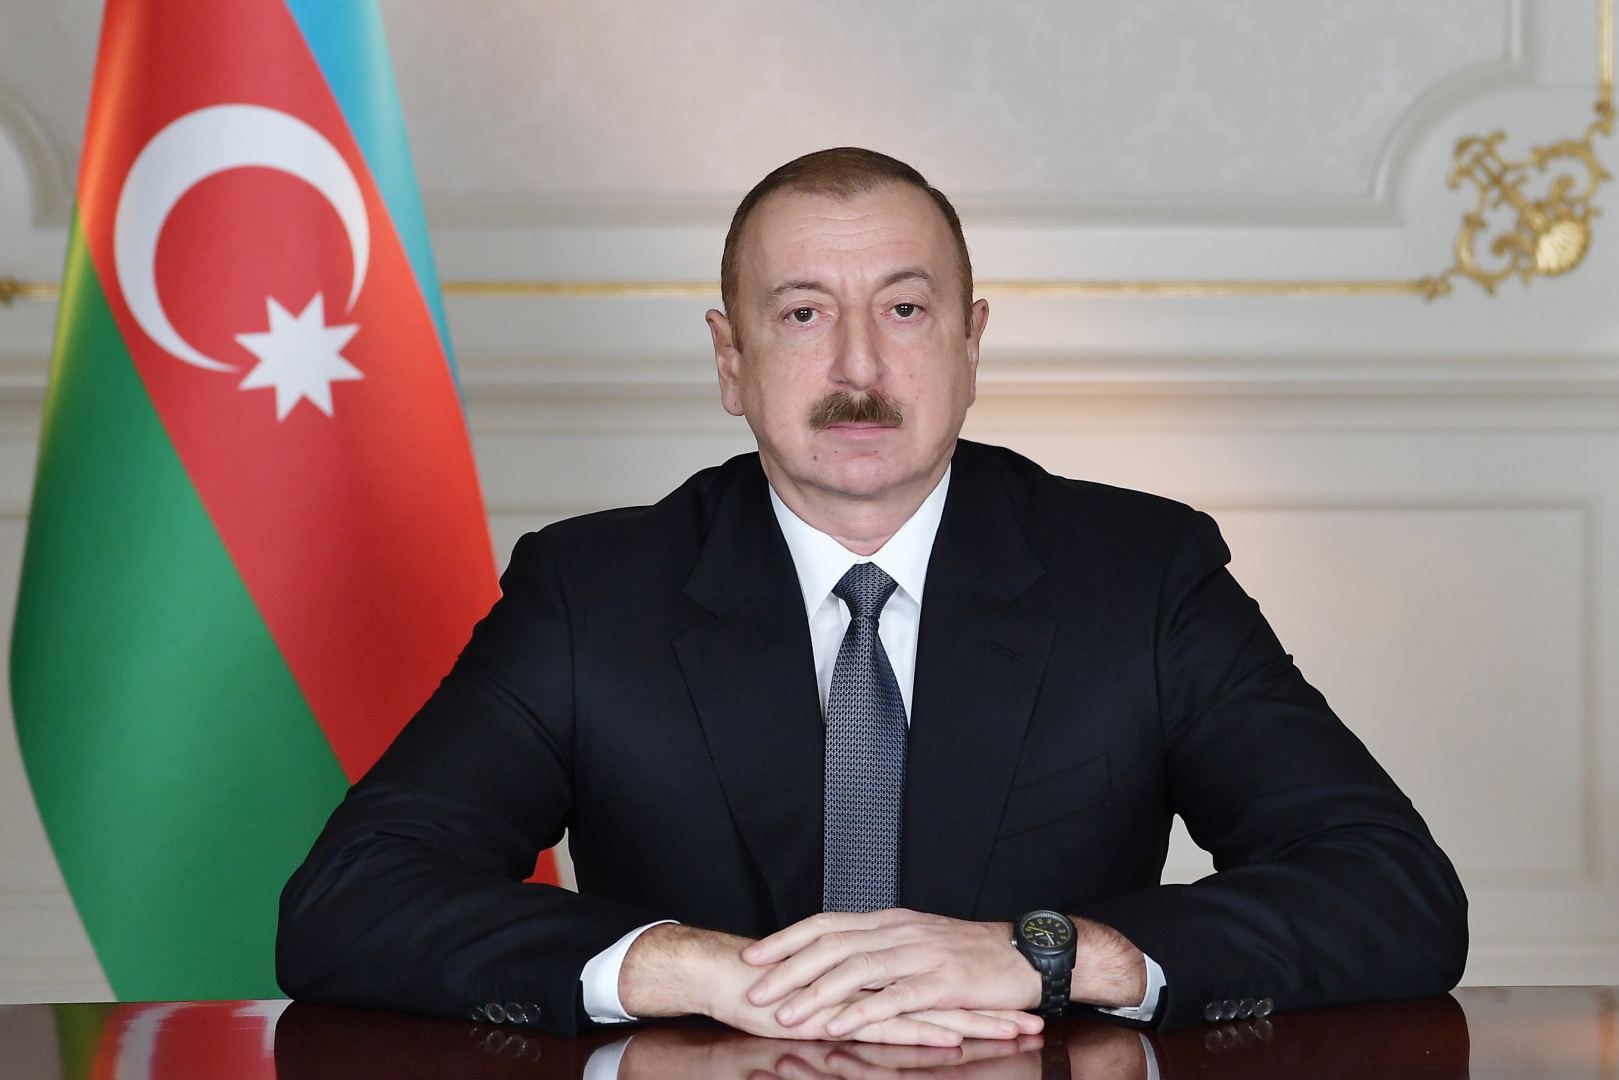 Назначен новый посол Азербайджана в Бразилии - Распоряжение